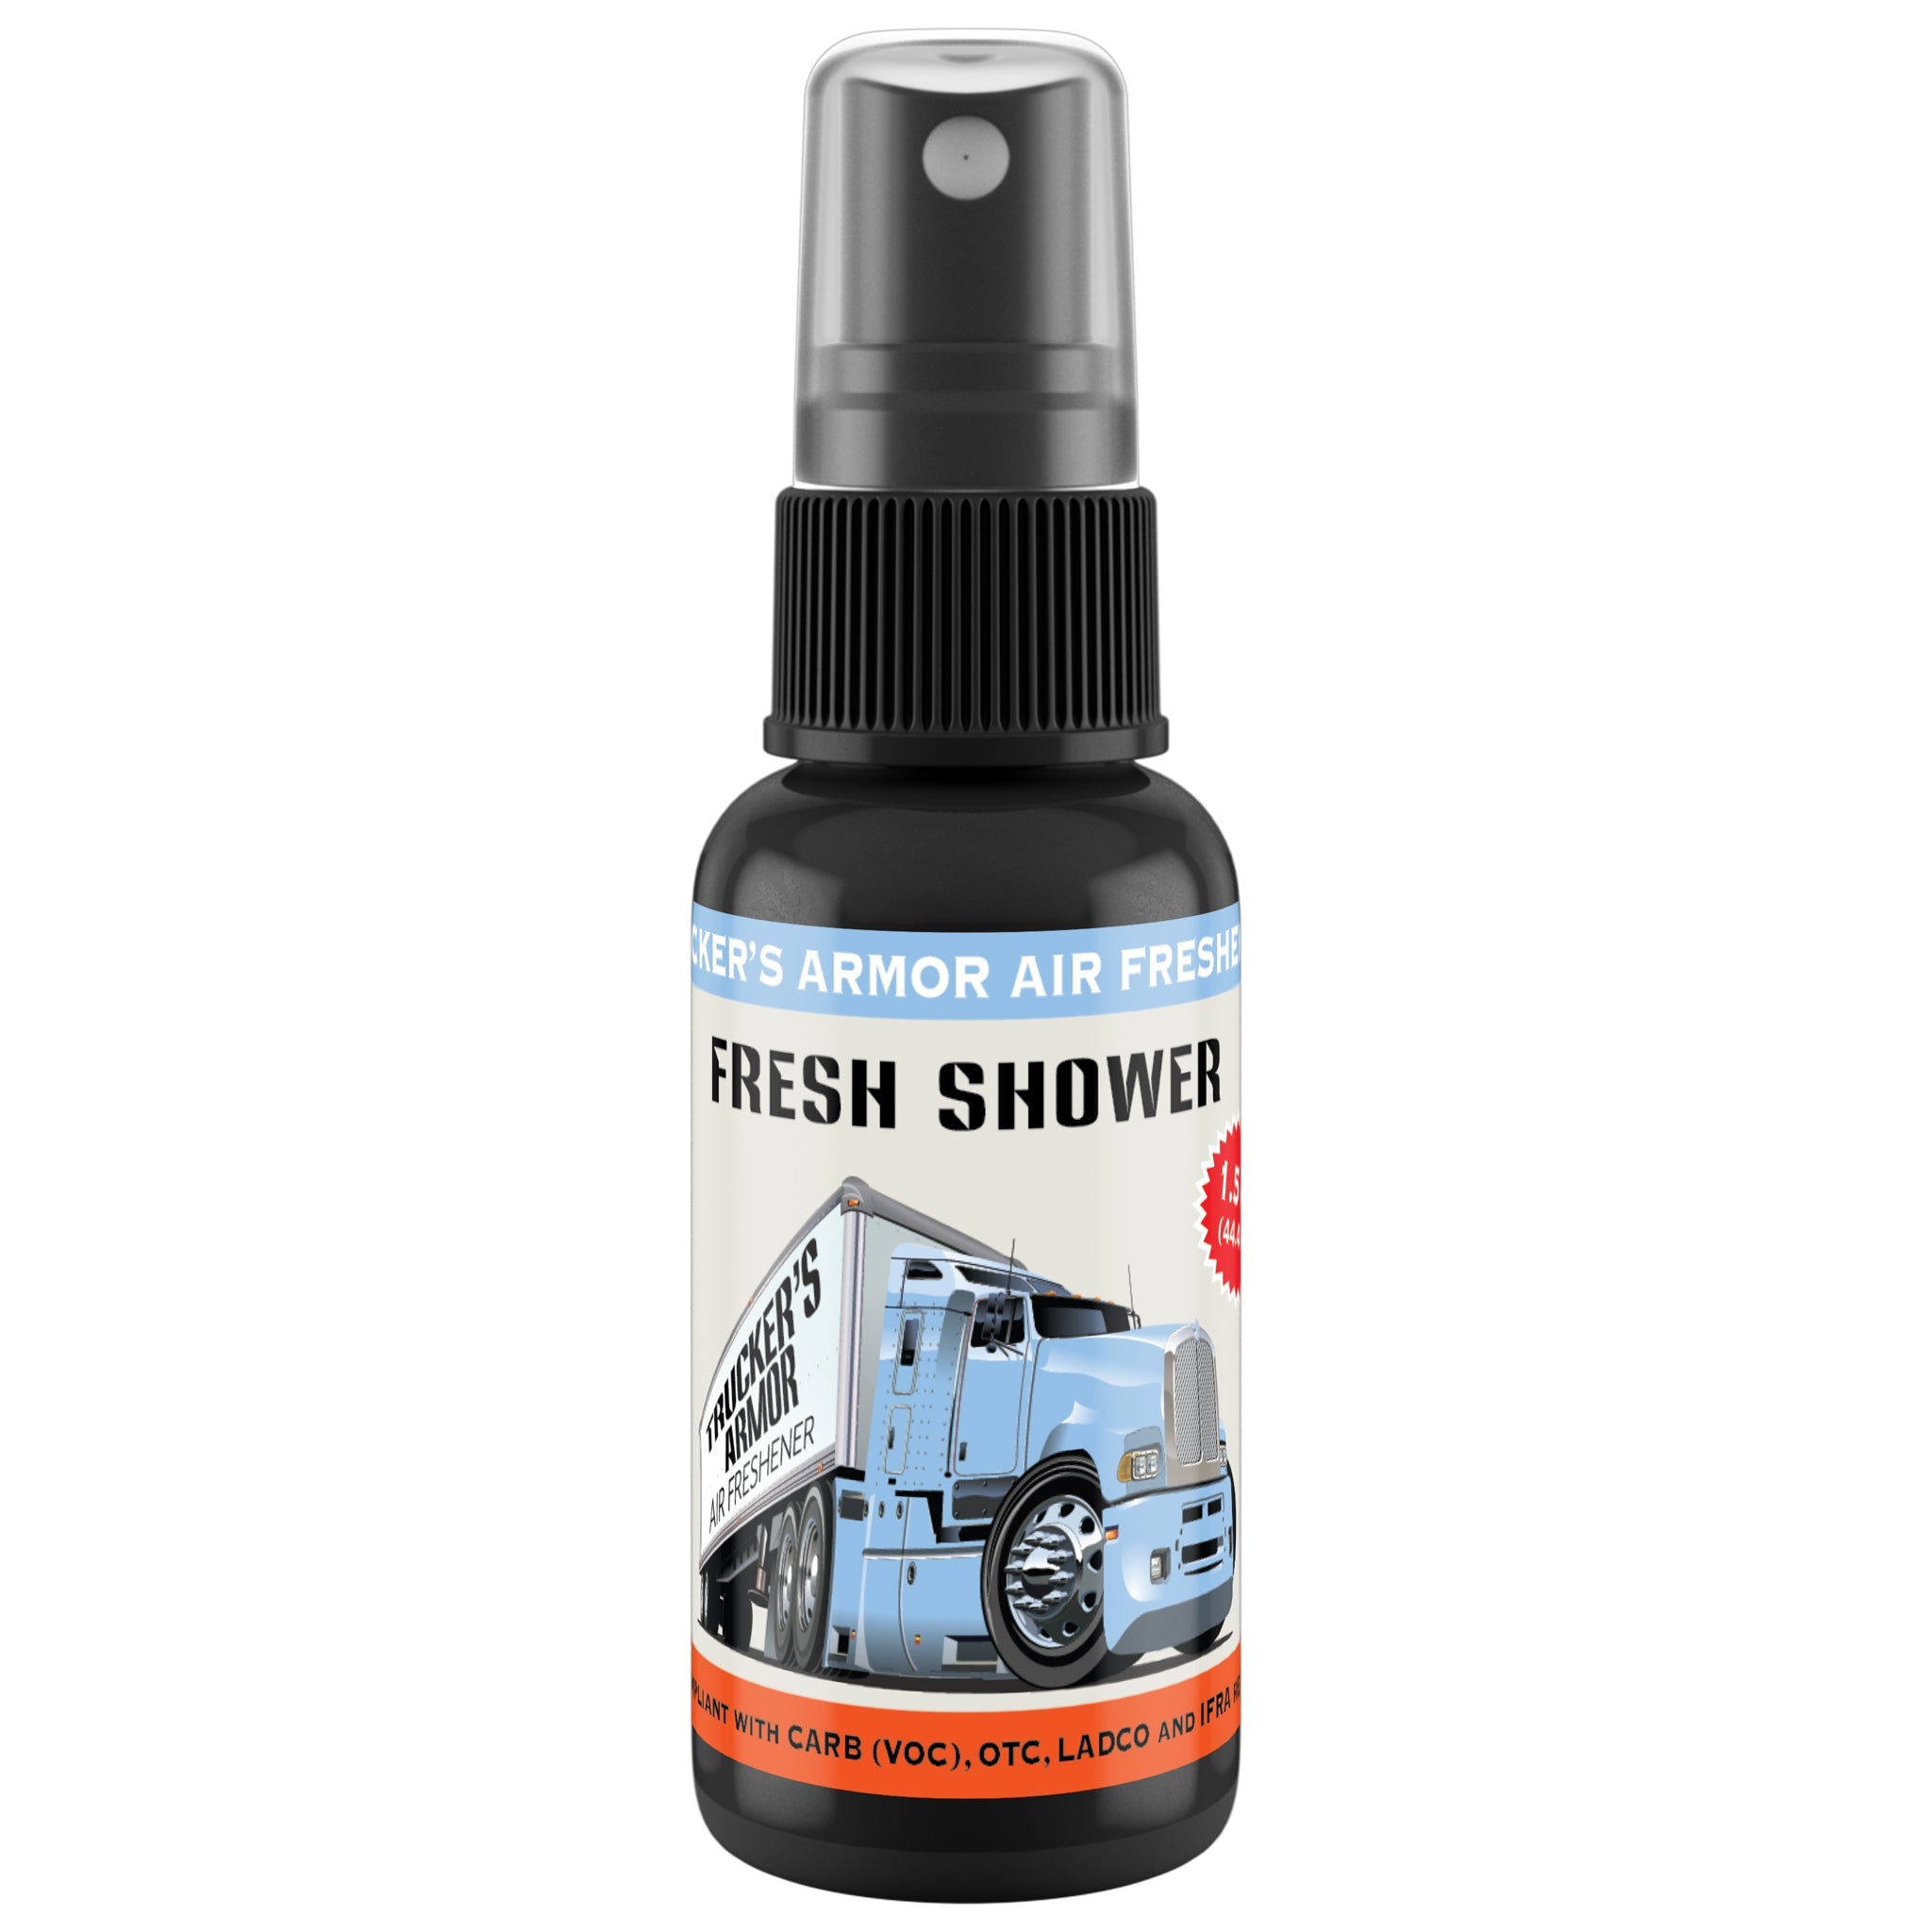 Trucker's Armor Air Freshener - Fresh Shower Scent